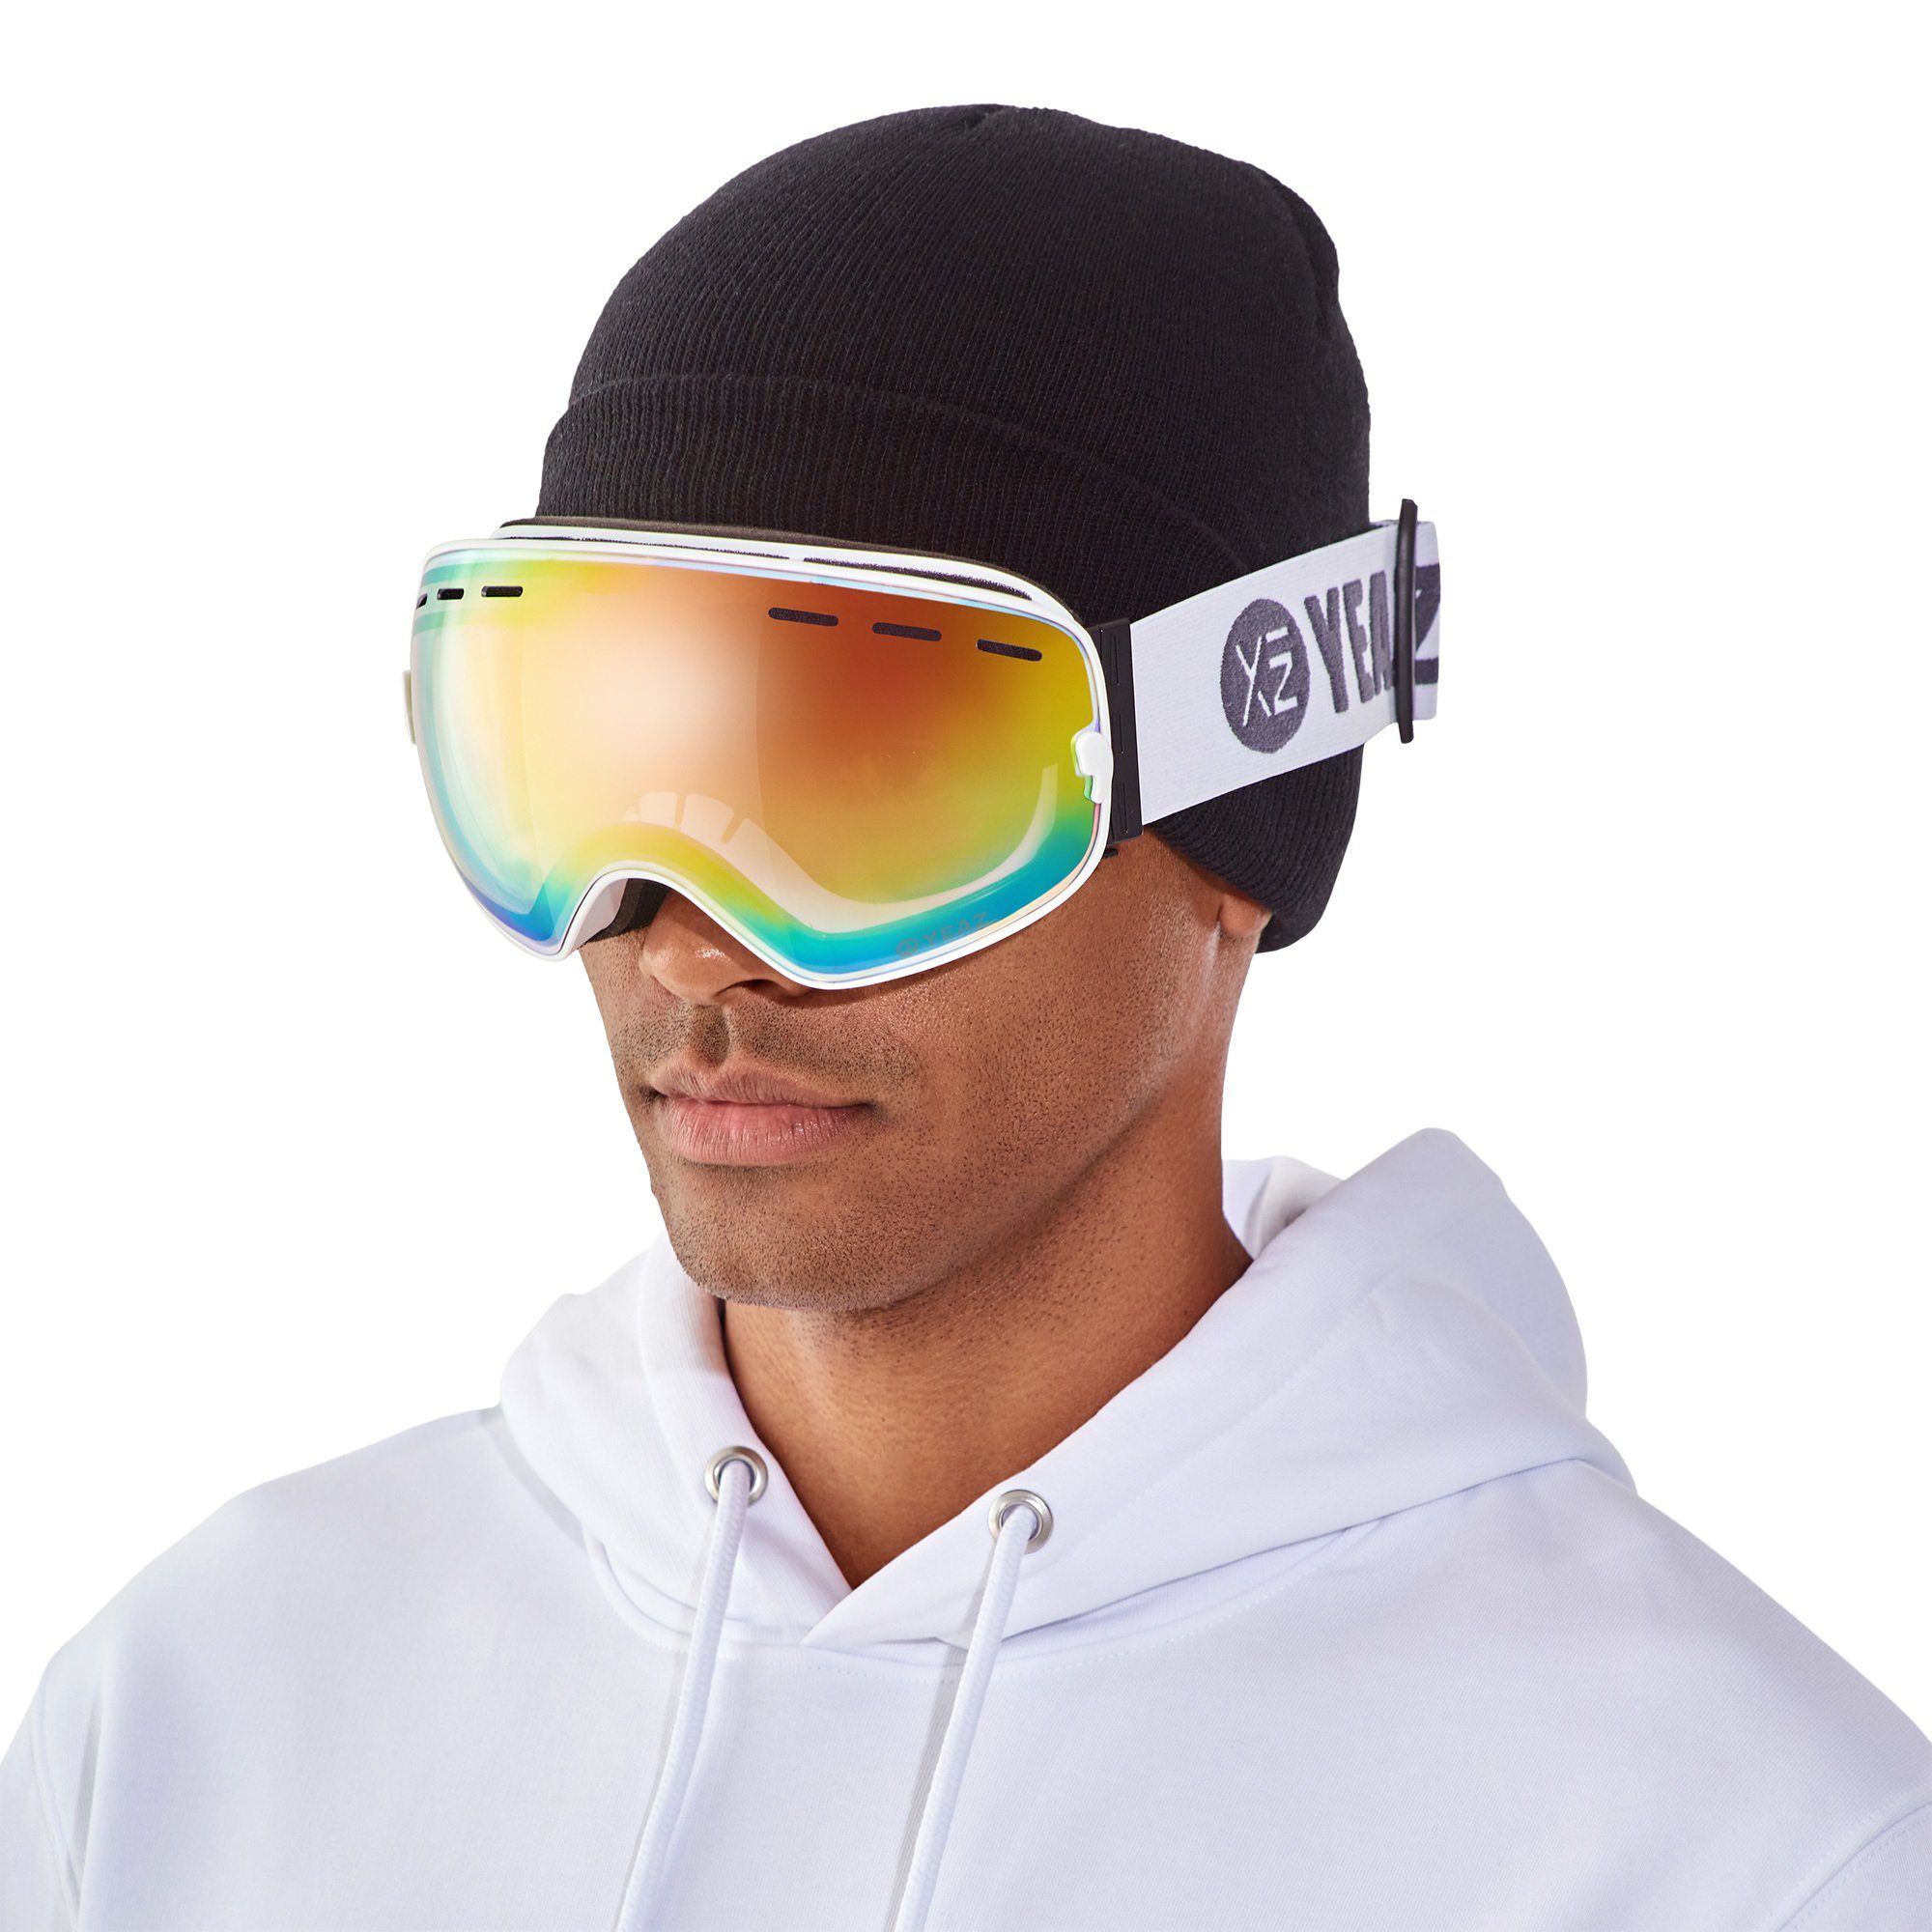 YEAZ Skibrille XTRM-SUMMIT, Premium-Ski- und Snowboardbrille für Erwachsene und Jugendliche